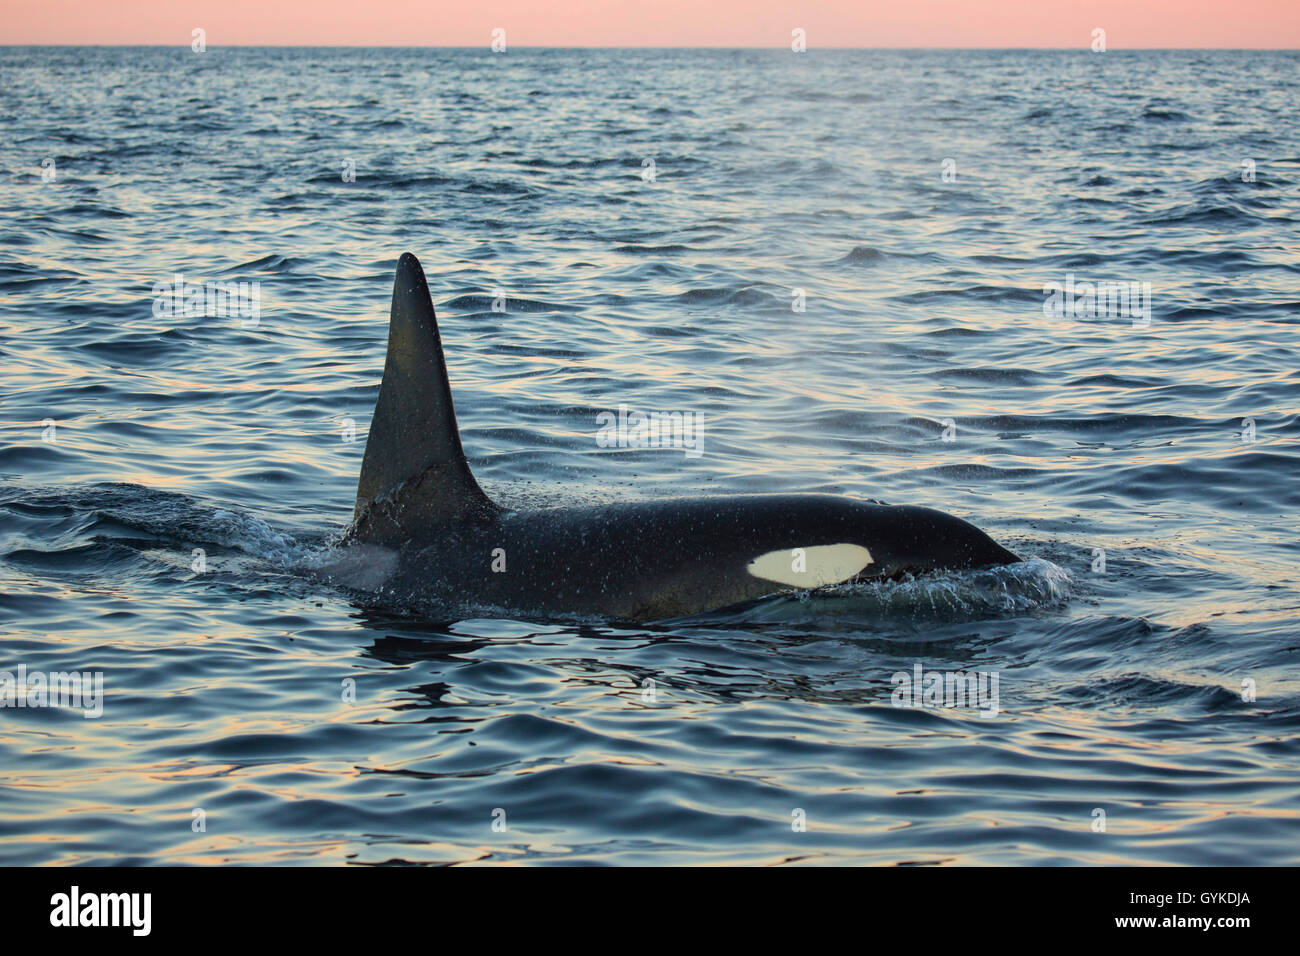 Orca, grande balena killer, grampus (Orcinus orca), grandi ragazzi prendere fiato in mare aperto, vista laterale, Norvegia, Troms, Senja Foto Stock